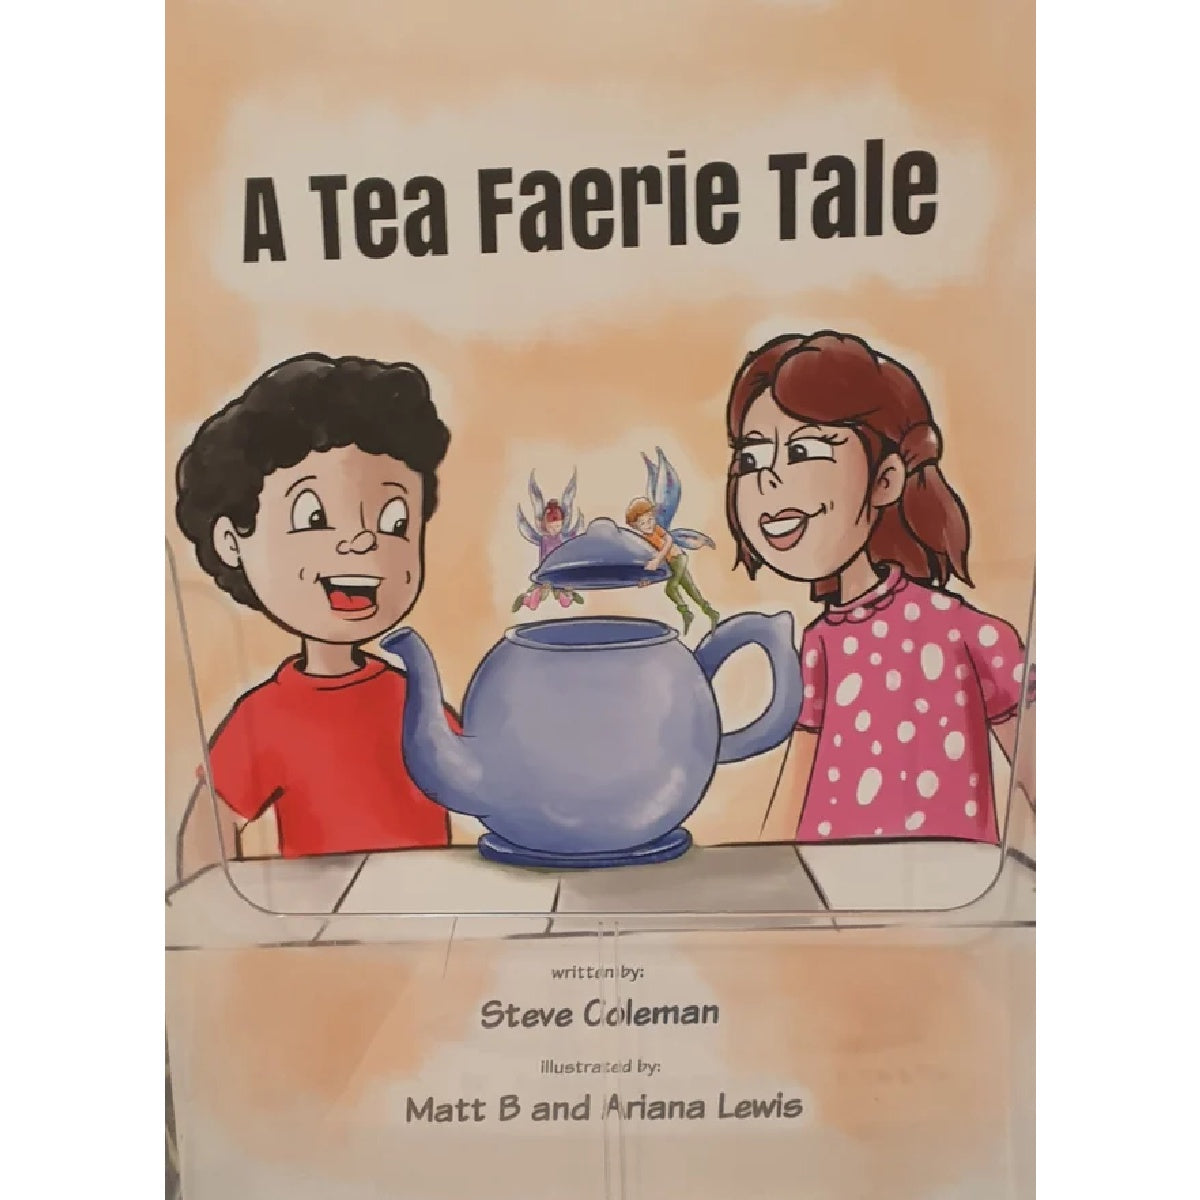 A Tea Fairie Tale by Steve Coleman